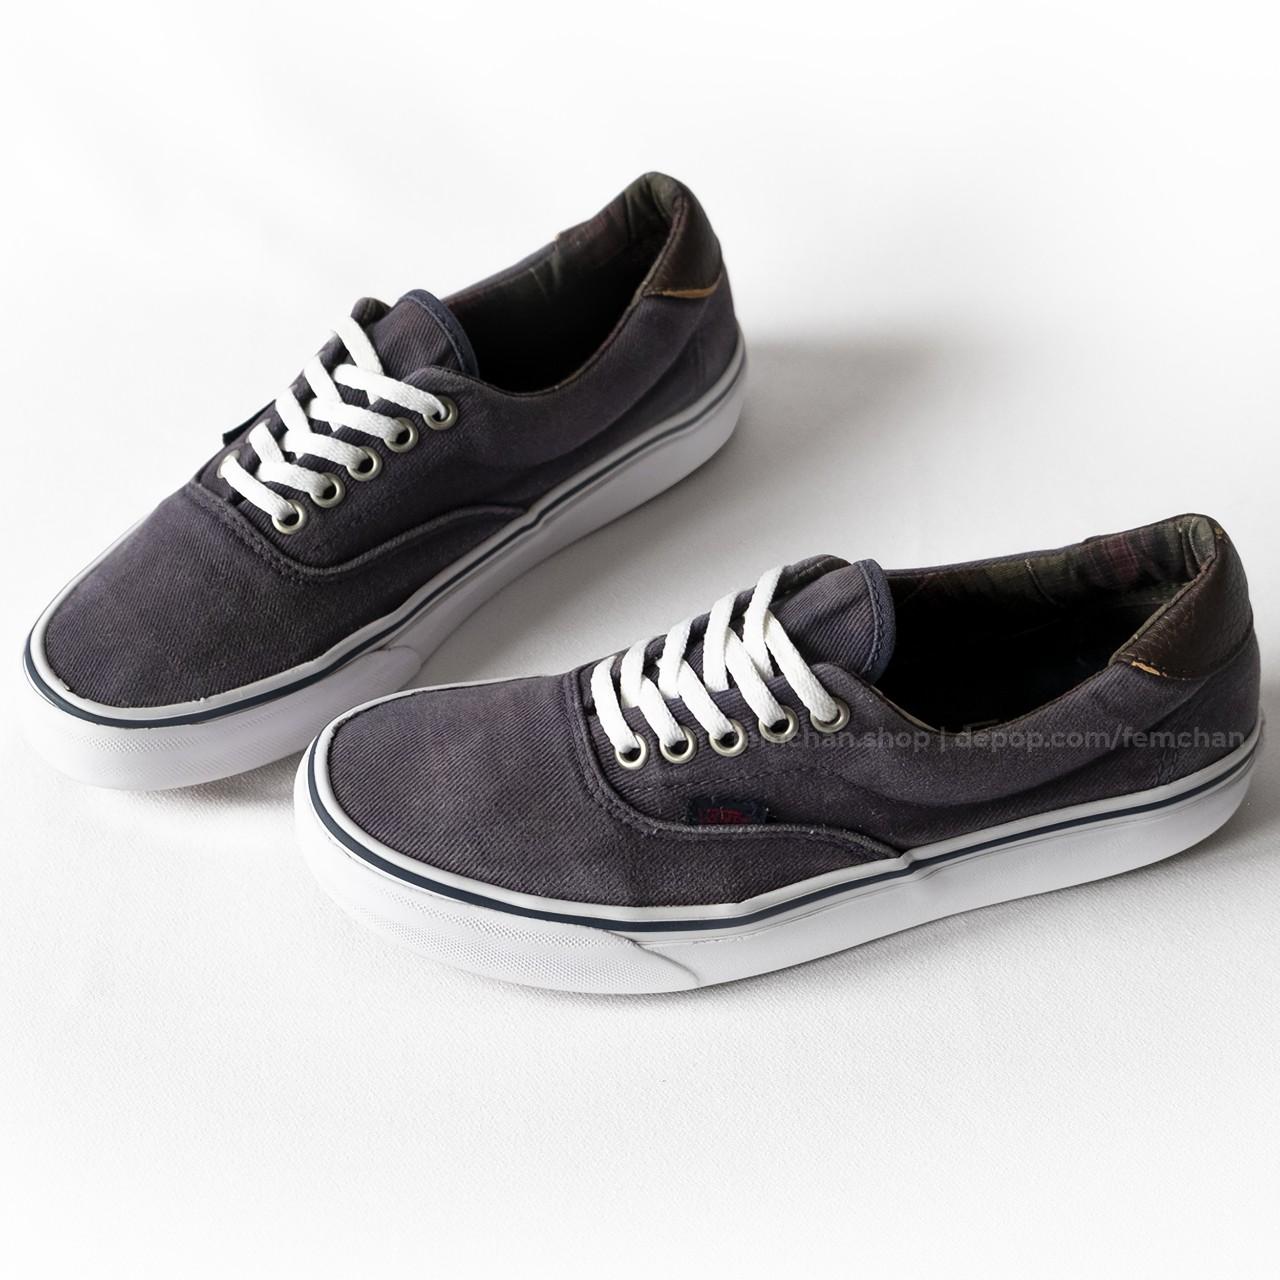 Vans Era sneakers, vintage skate shoes, with dark... - Depop